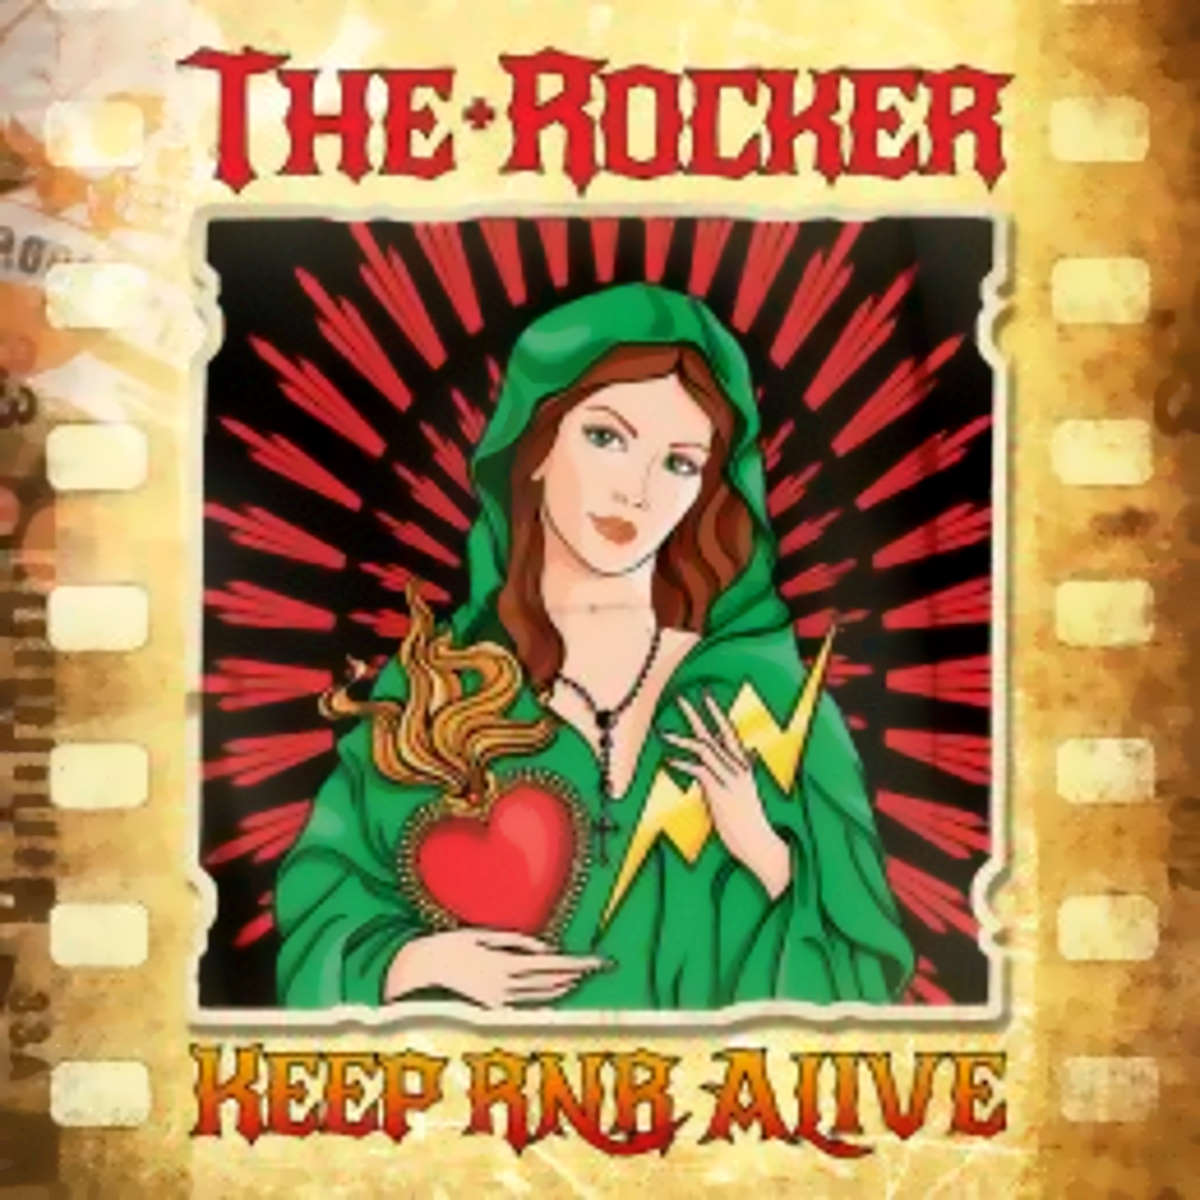 THE ROCKER, “They can’t kill your idols” è il primo inedito che anticipa l’album in uscita